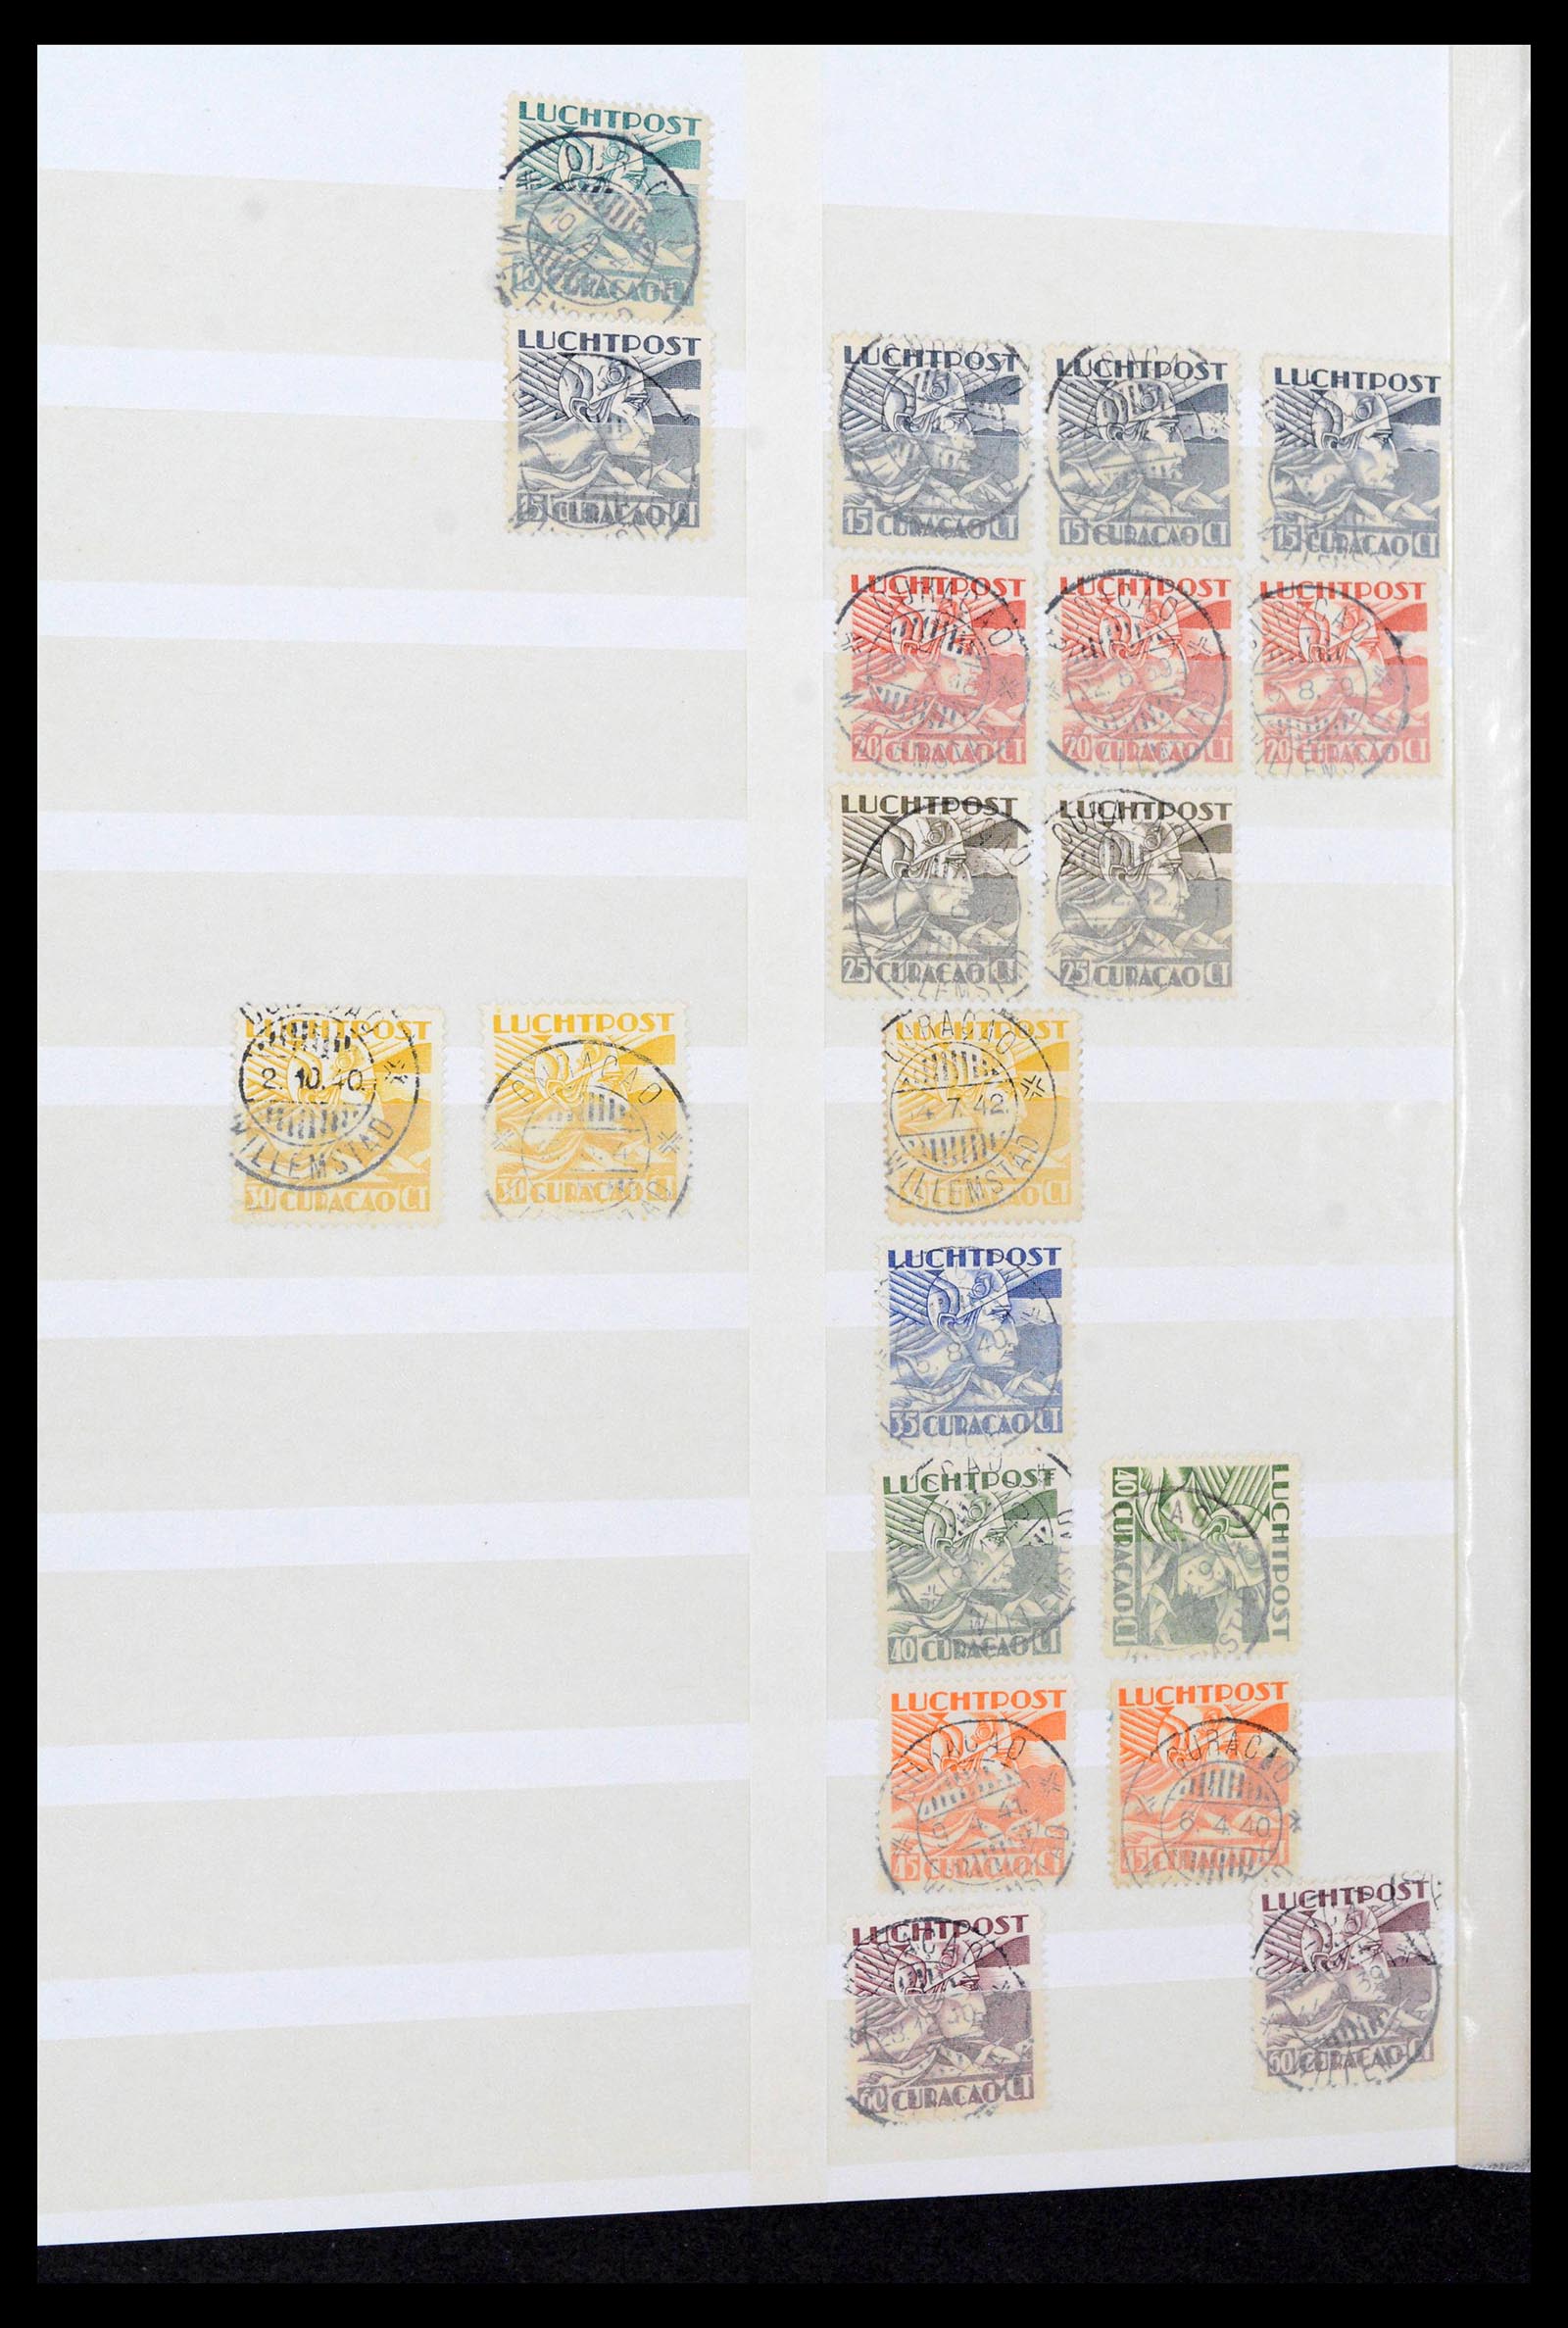 39541 0043 - Postzegelverzameling 39541 Curaçao/Antillen stempels 1873-1970.